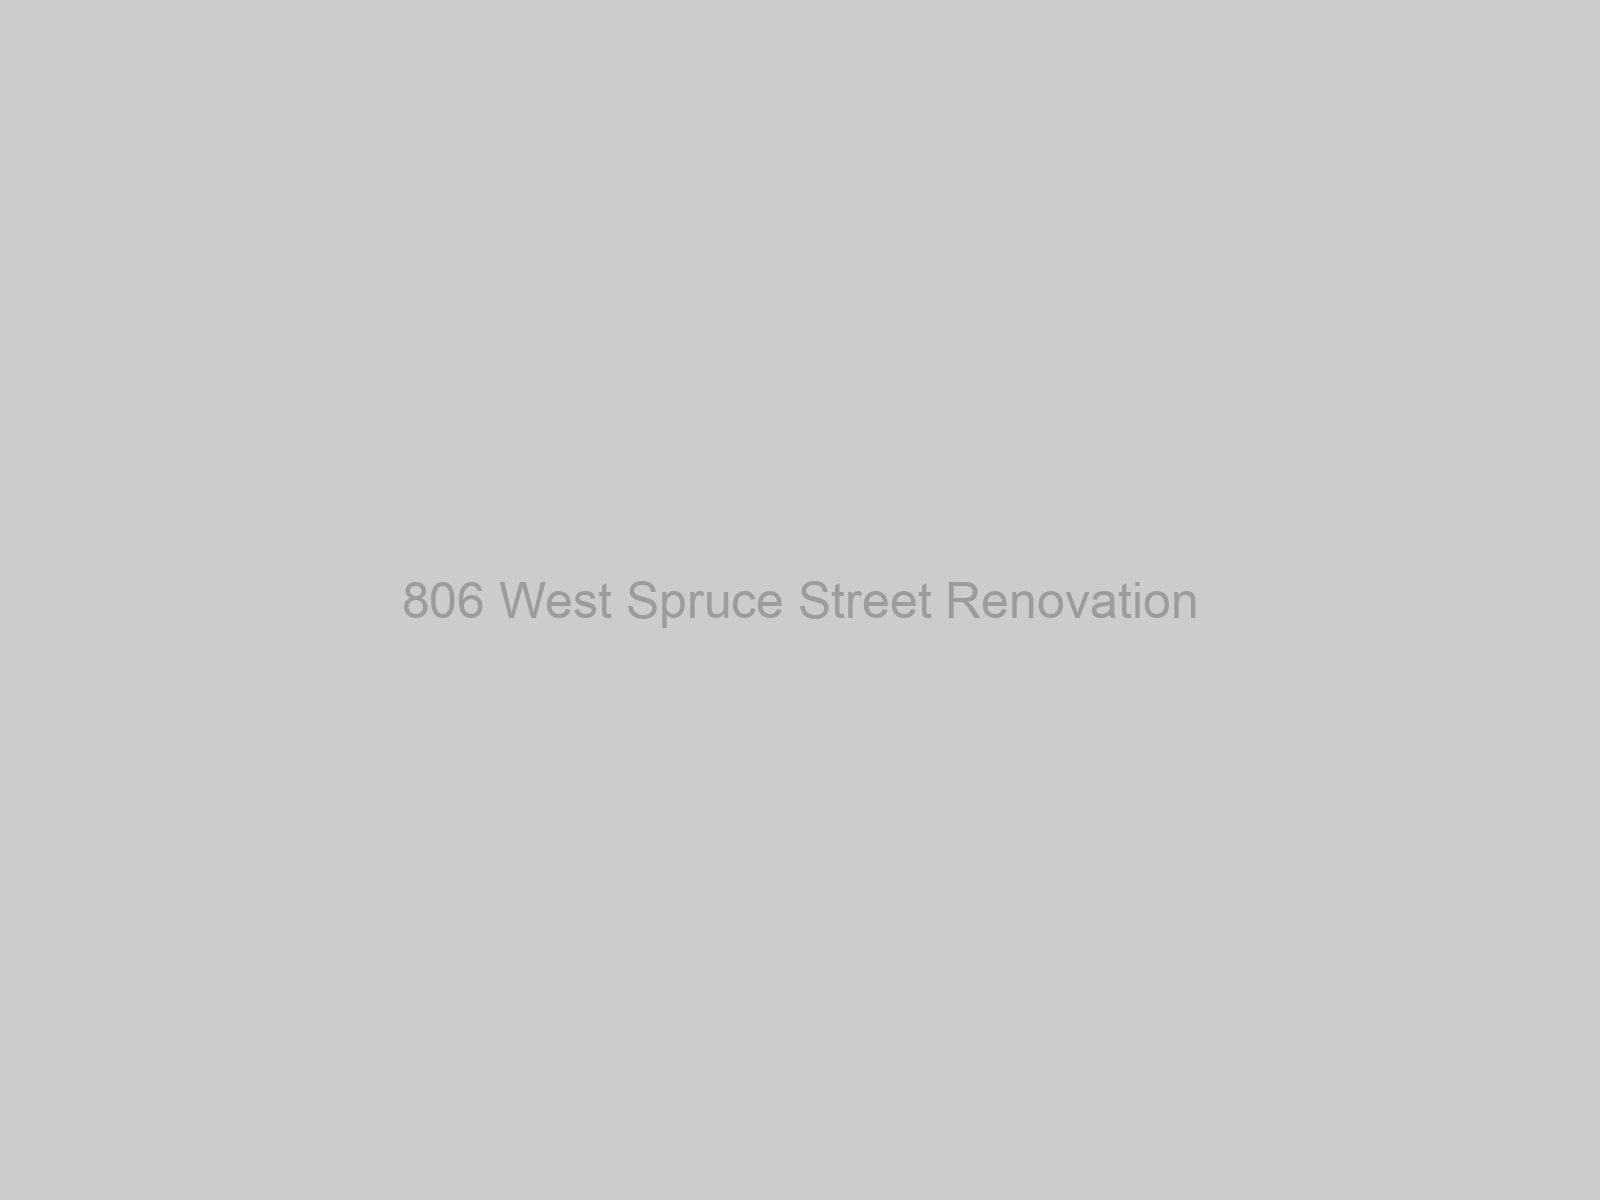 806 West Spruce Street Renovation